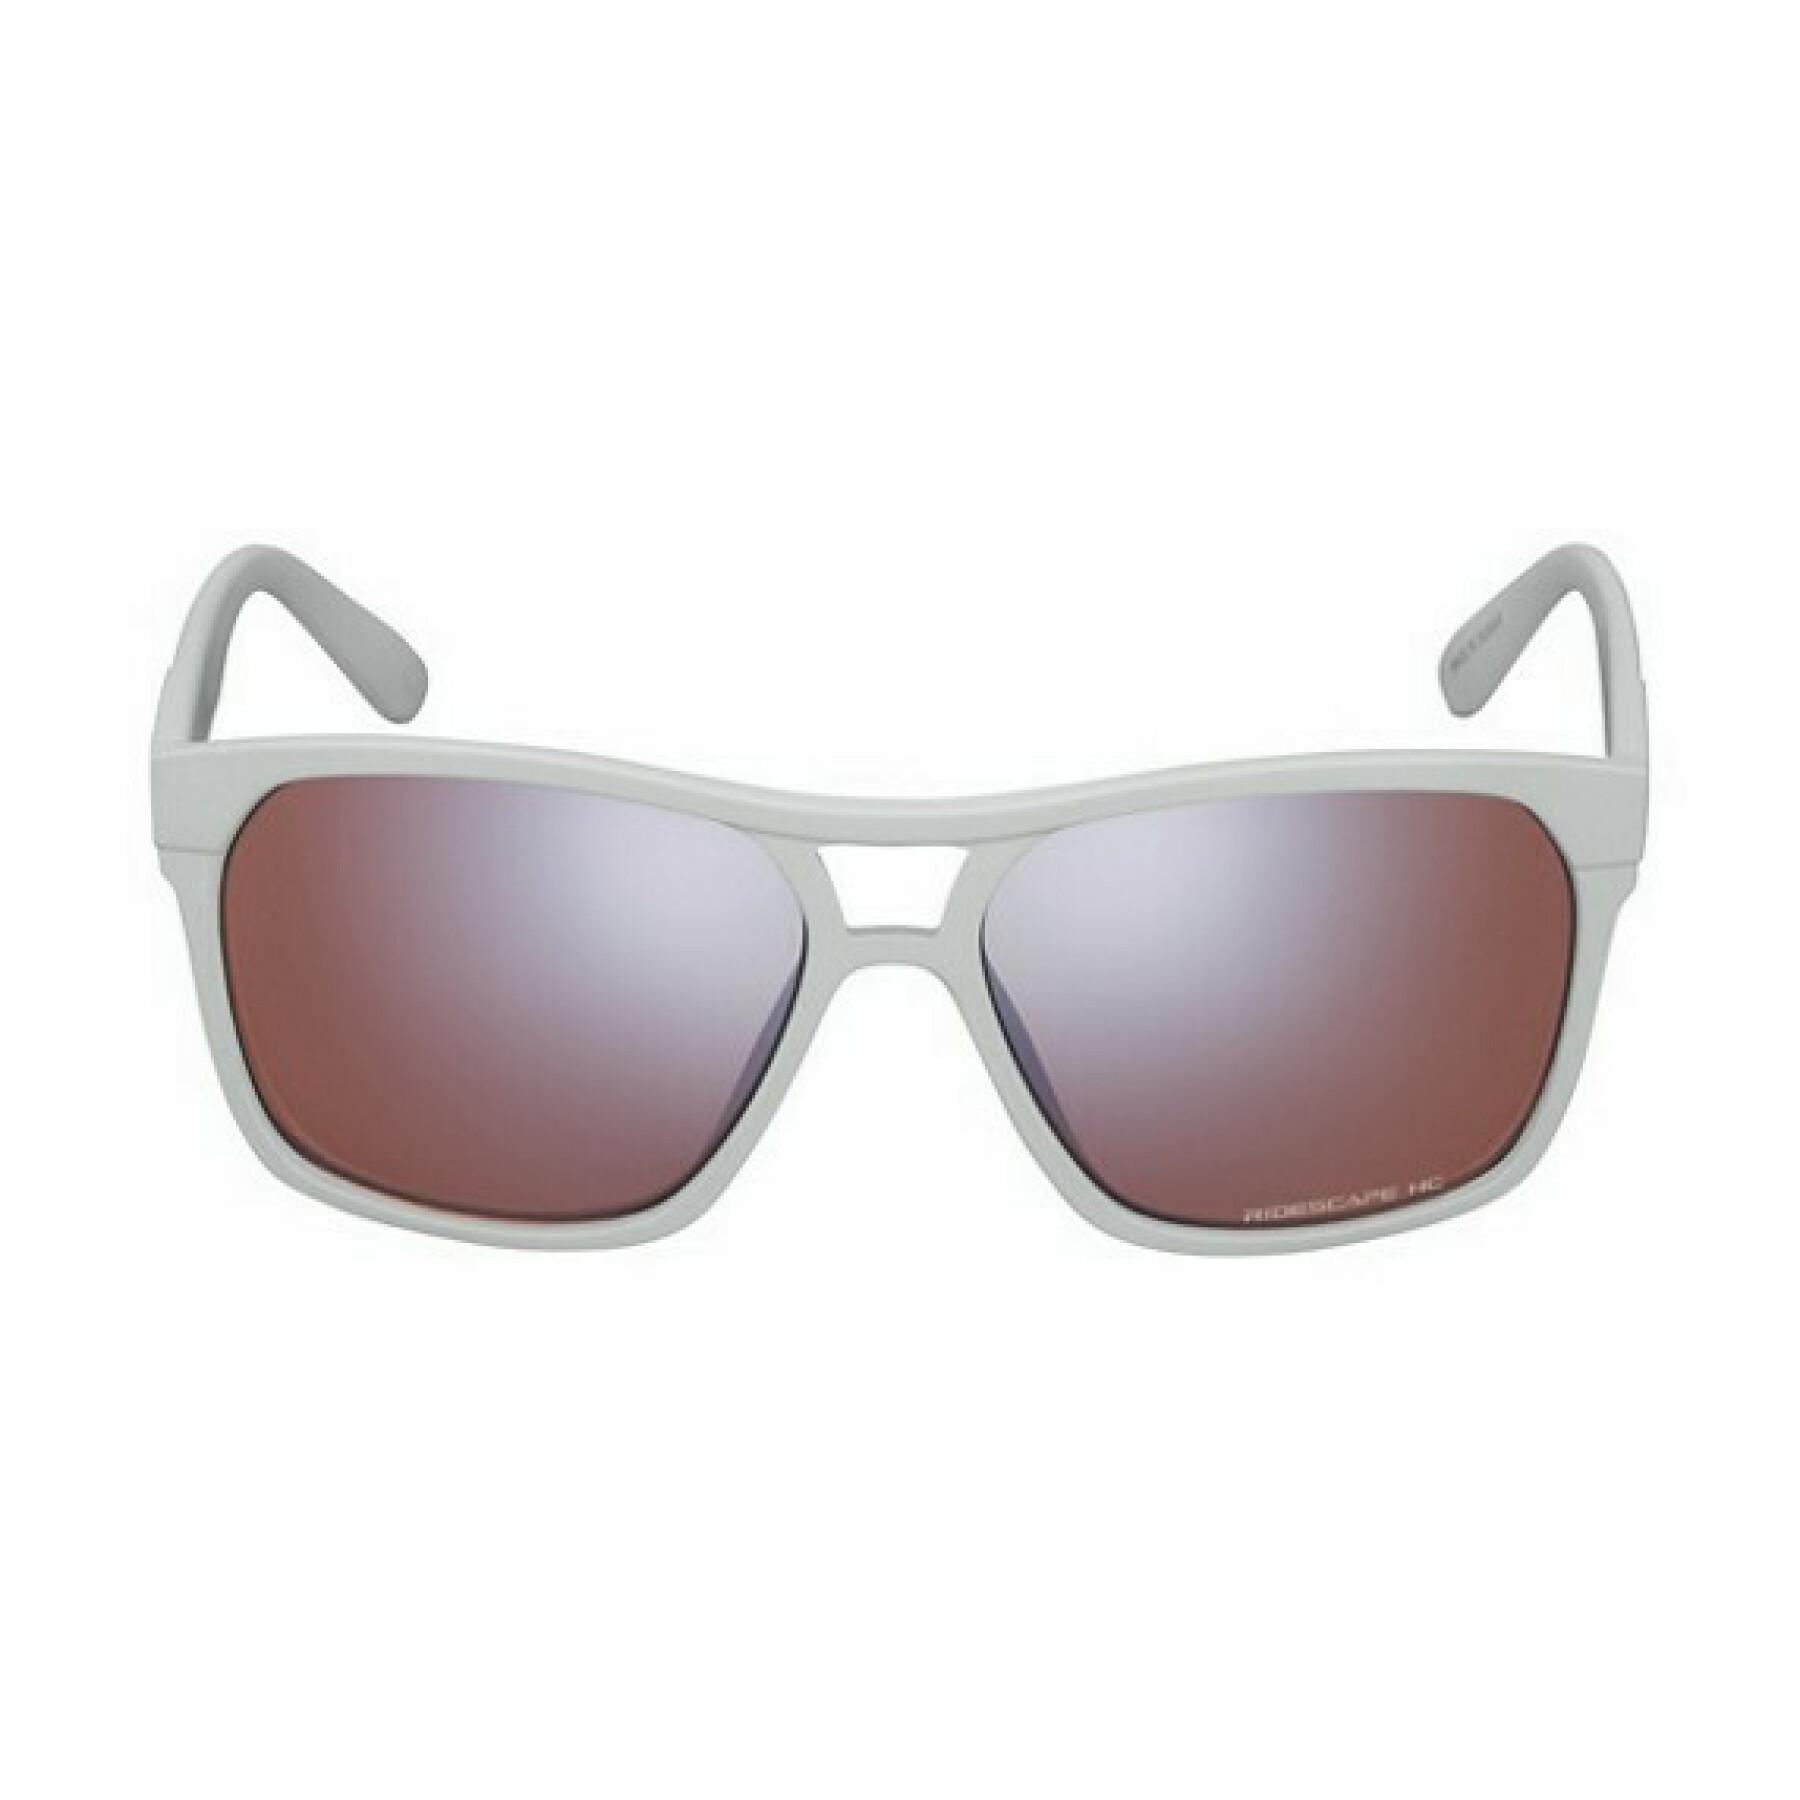 Sunglasses Shimano CE-SQRE2 Square